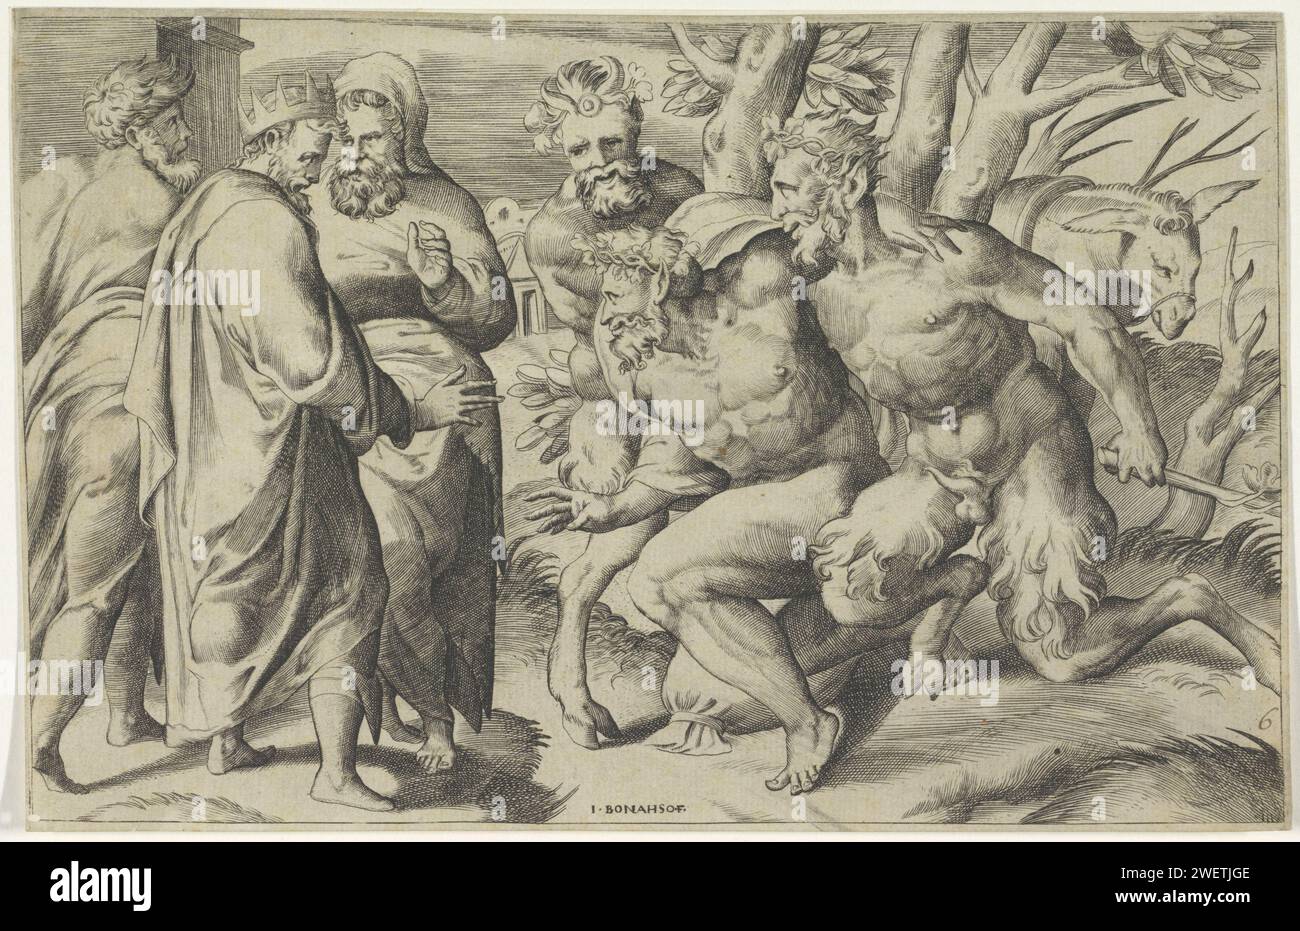 Deux saters apportent Silène au roi Midas, Giulio Bonasone, d'après Perino del Vaga, 1501 - 1580 print Silène est soutenu par deux saters. Sur la gauche se trouve le roi Midas qui se tourne vers Silène. Gravure de papier Silenus amicalement diverti par Midas. Satyre(s) (en général) Banque D'Images